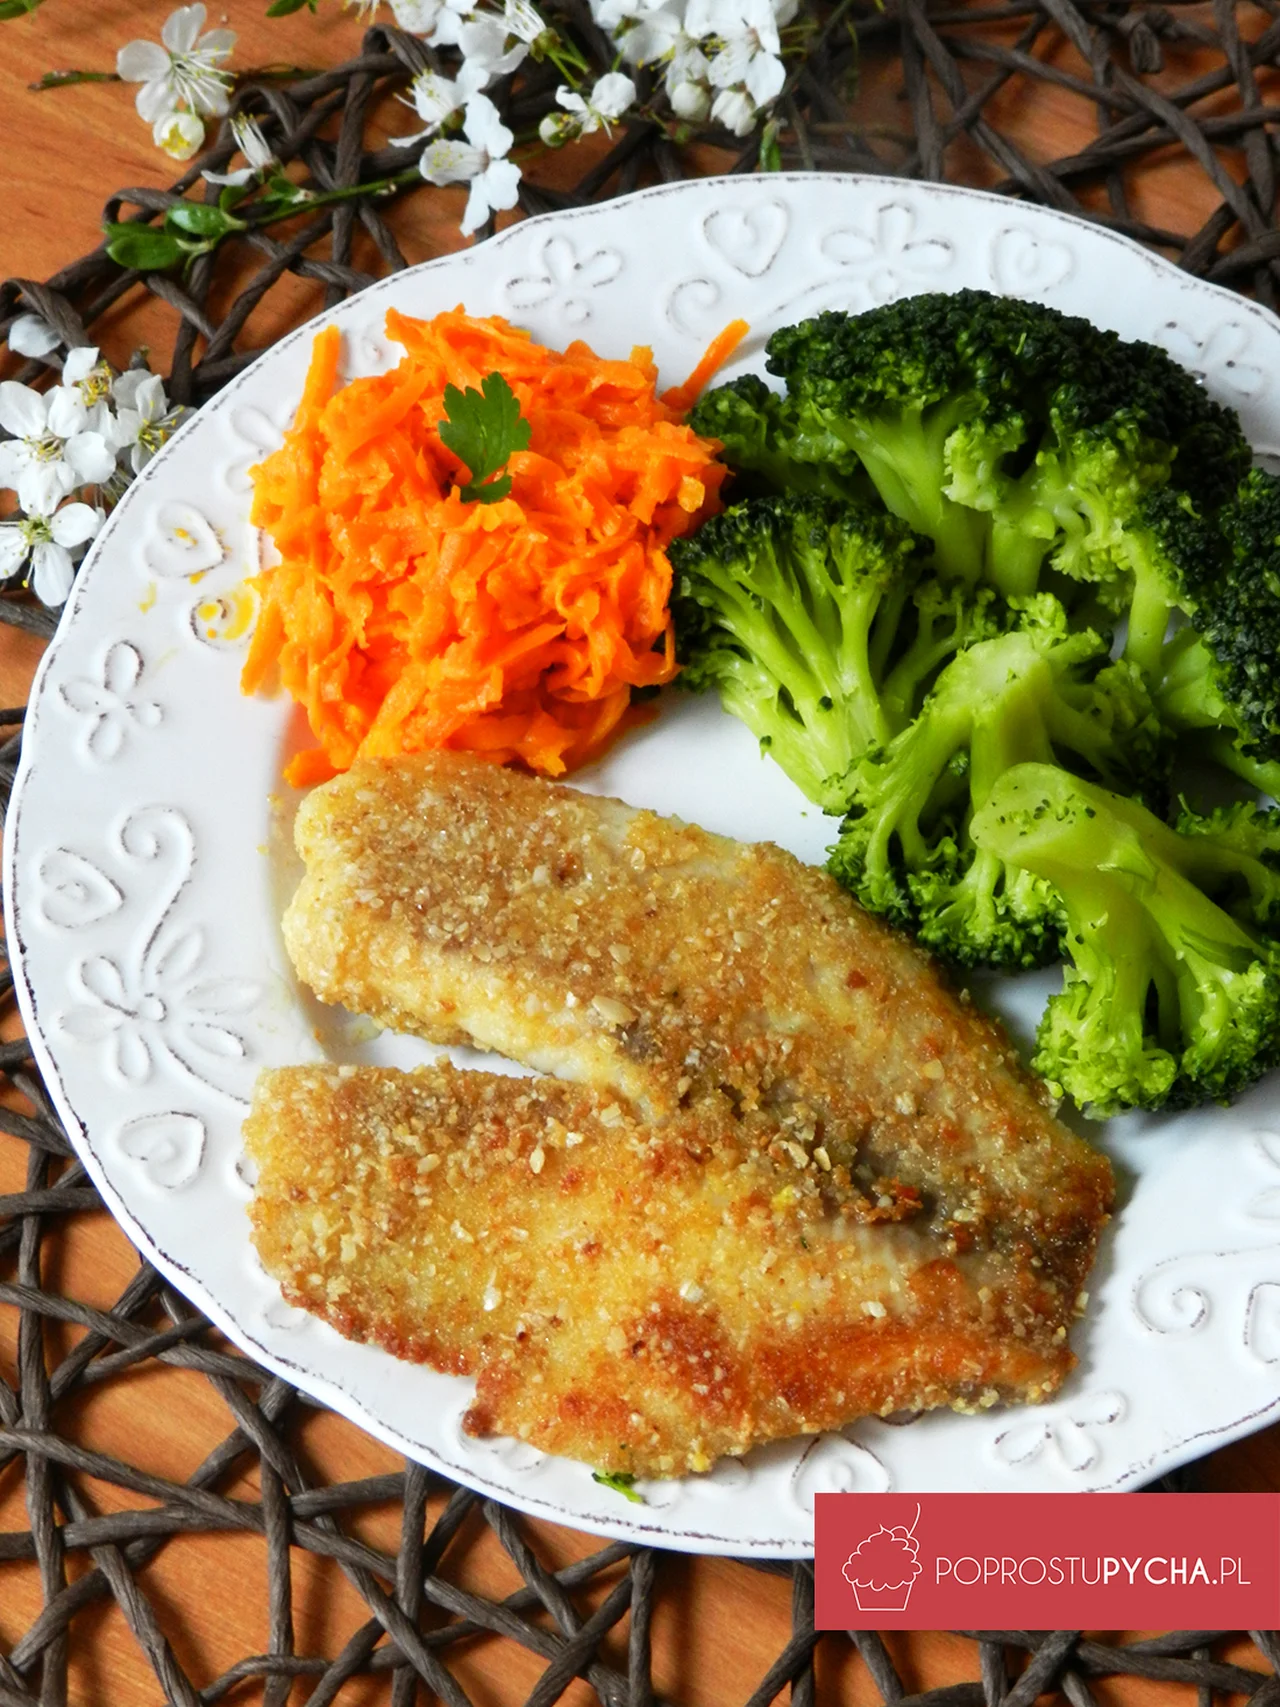 Fit ryba (tilapia) w owsianej panierce + brokuły + surówka z marchwi